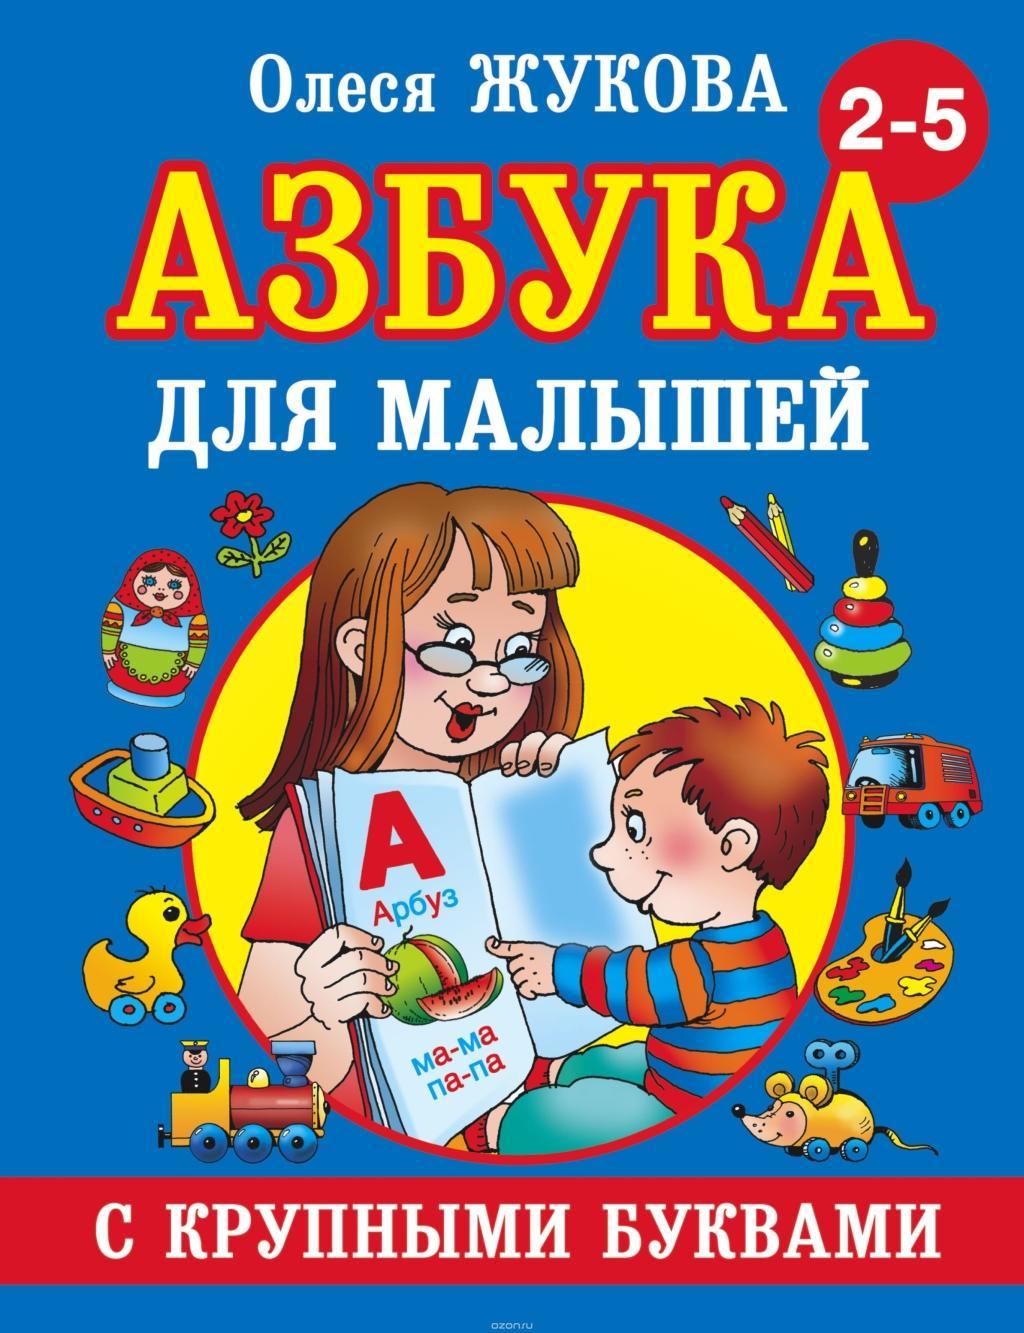 Kniha Azbuka s krupnymi bukvami dlja malyshej Olesja Zhukova